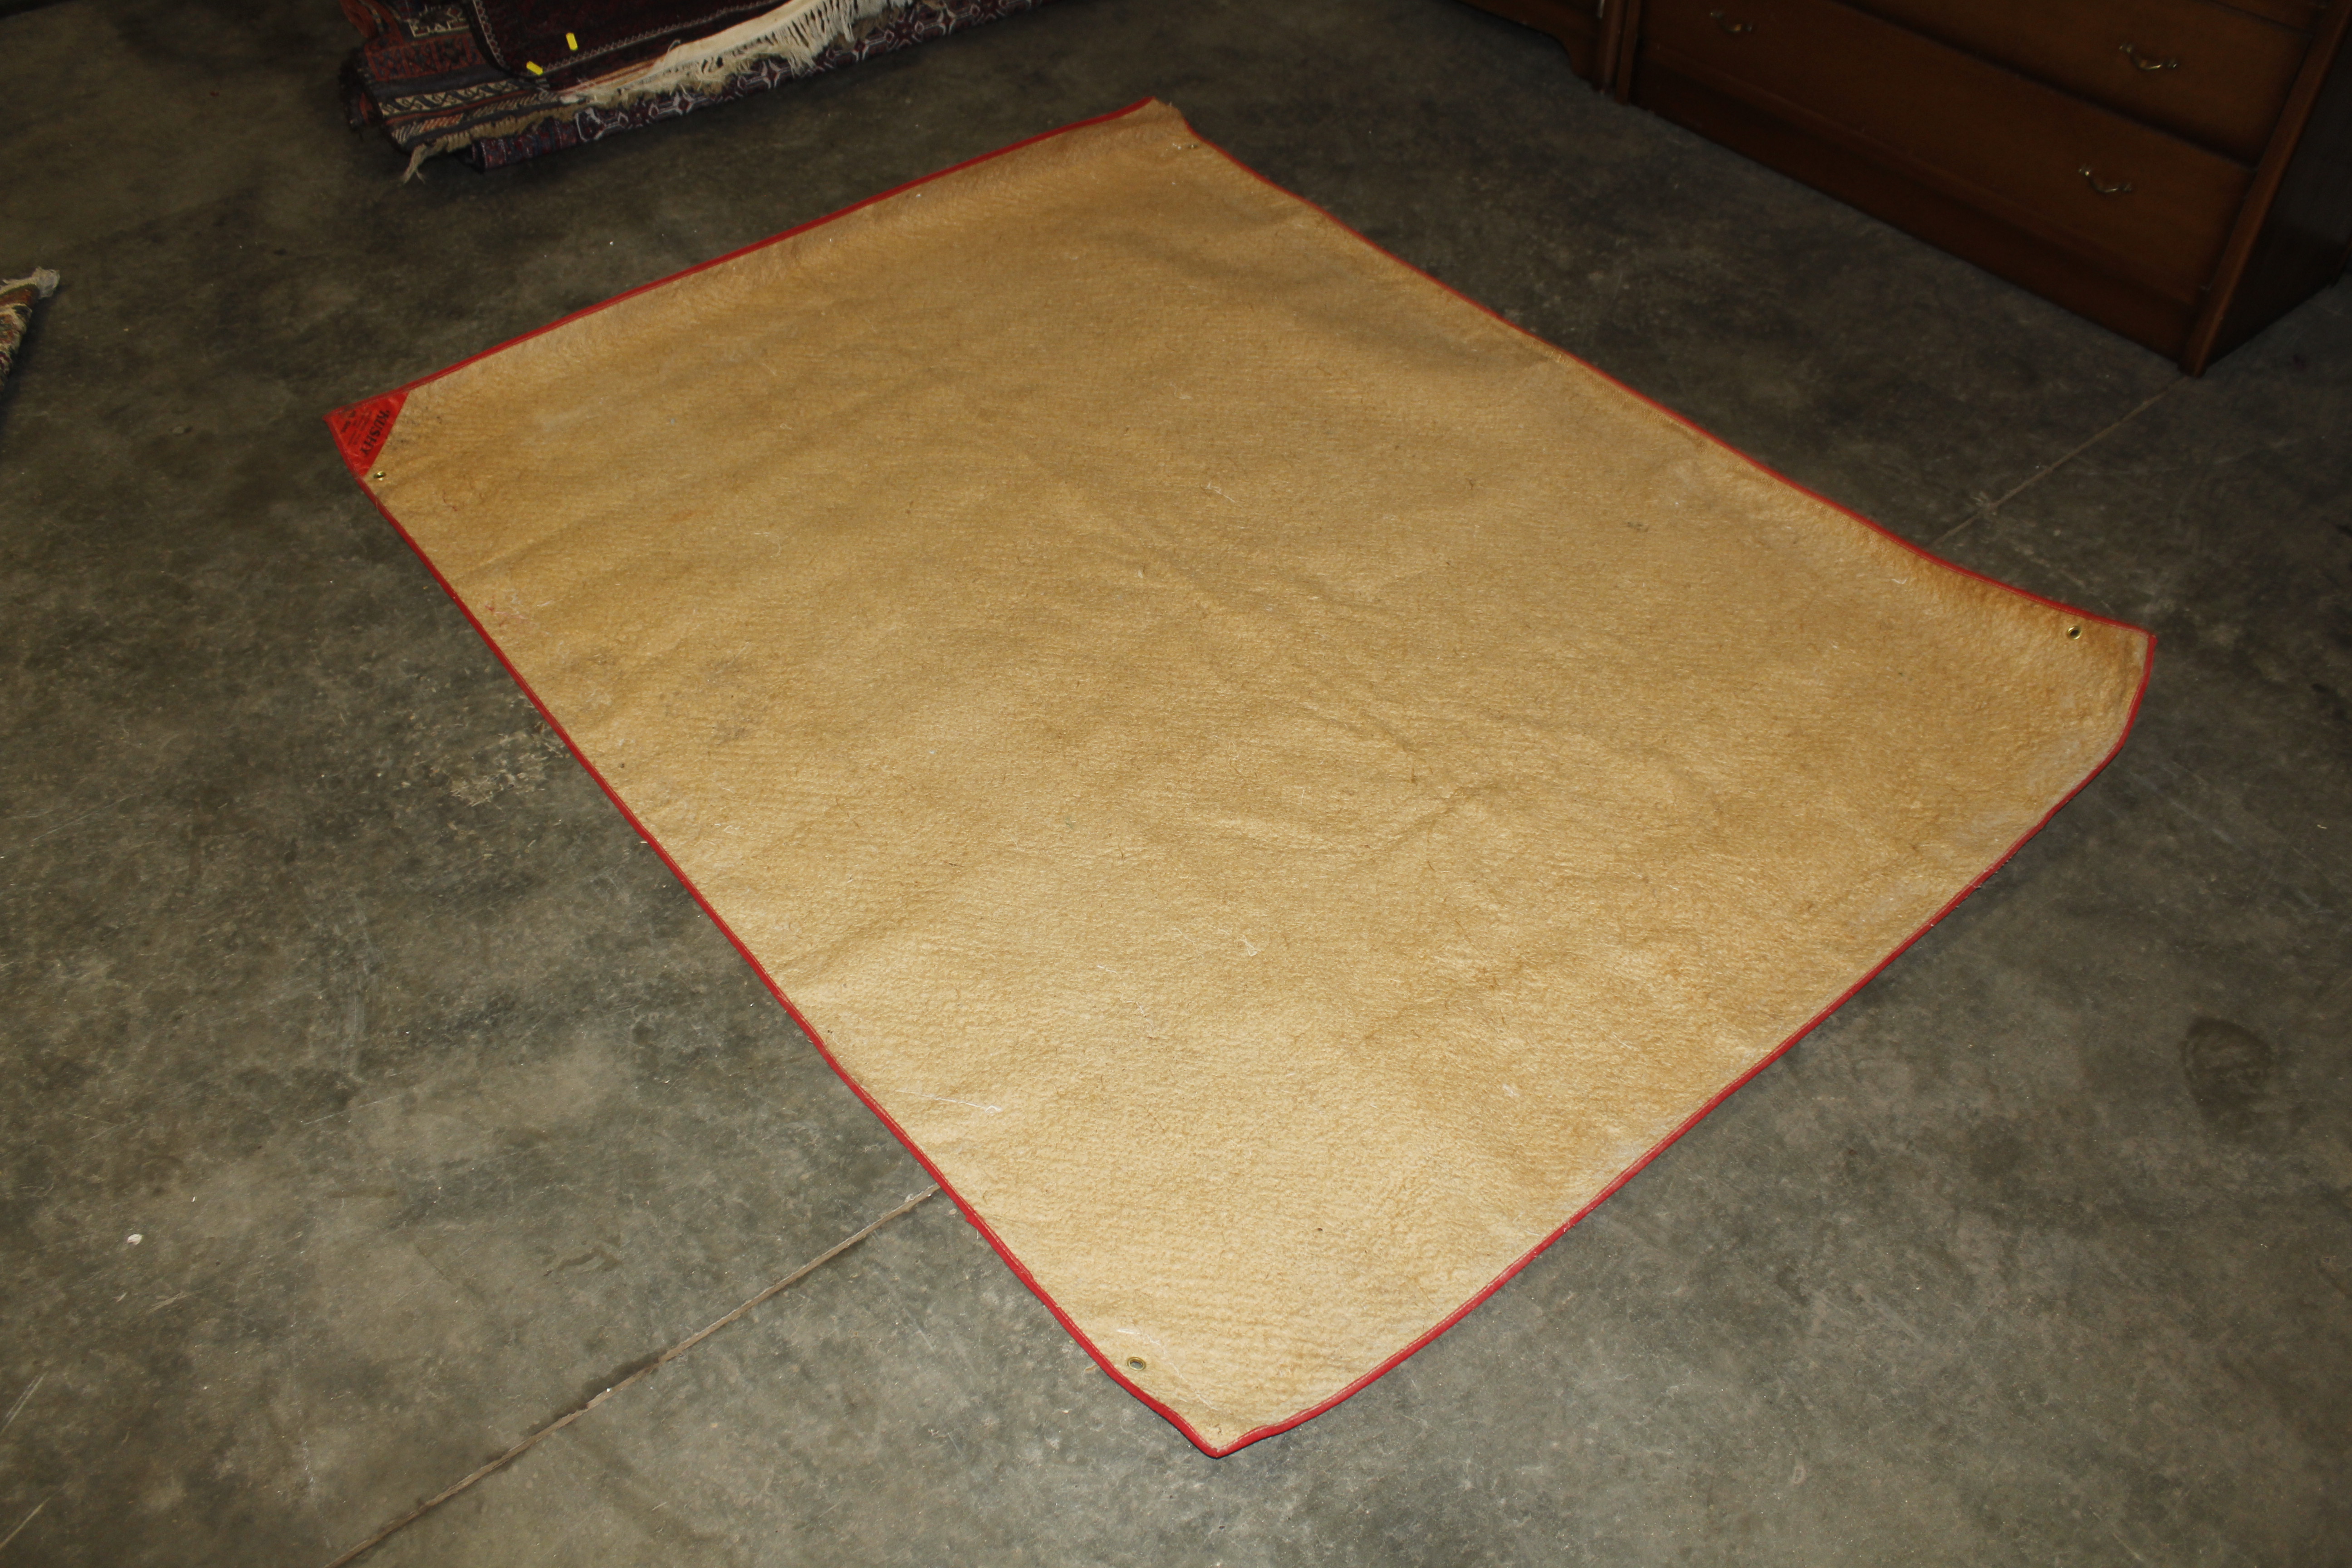 An approx. 6' x 4'7" brown mat